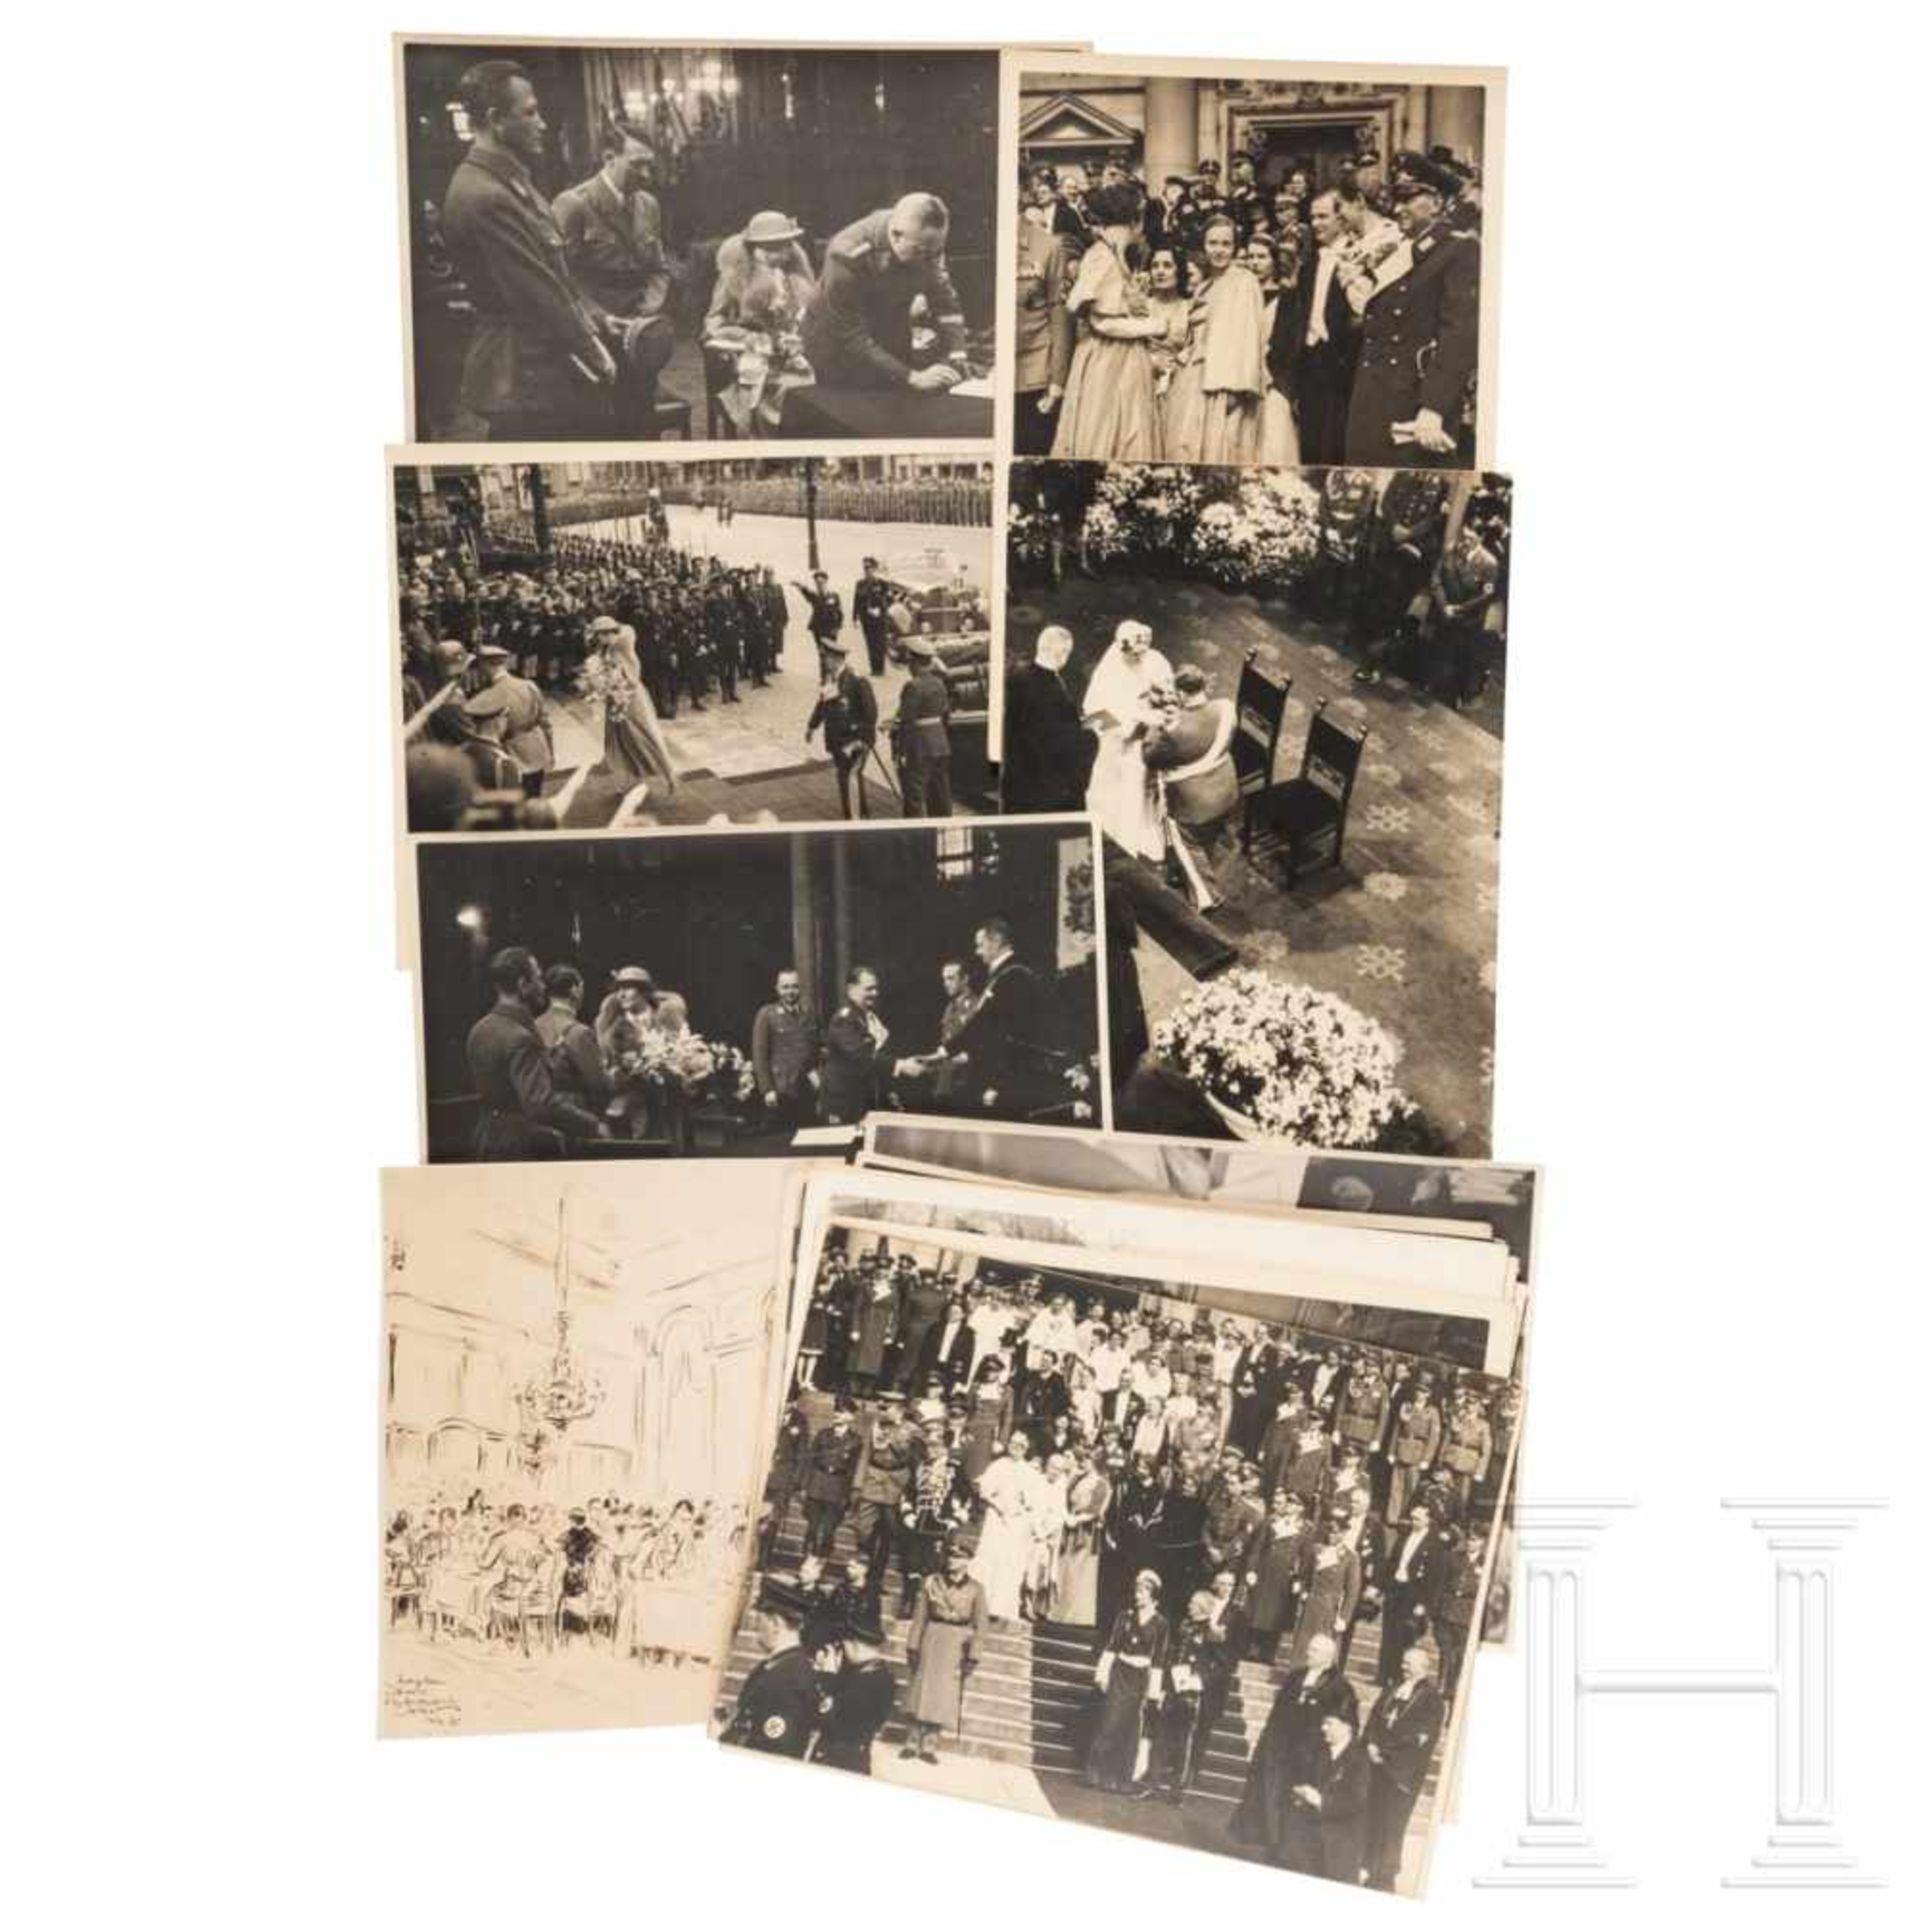 21 Fotos der Hochzeit von Hermann und Emmy Göring am 10. April 1935 - Bild 2 aus 2